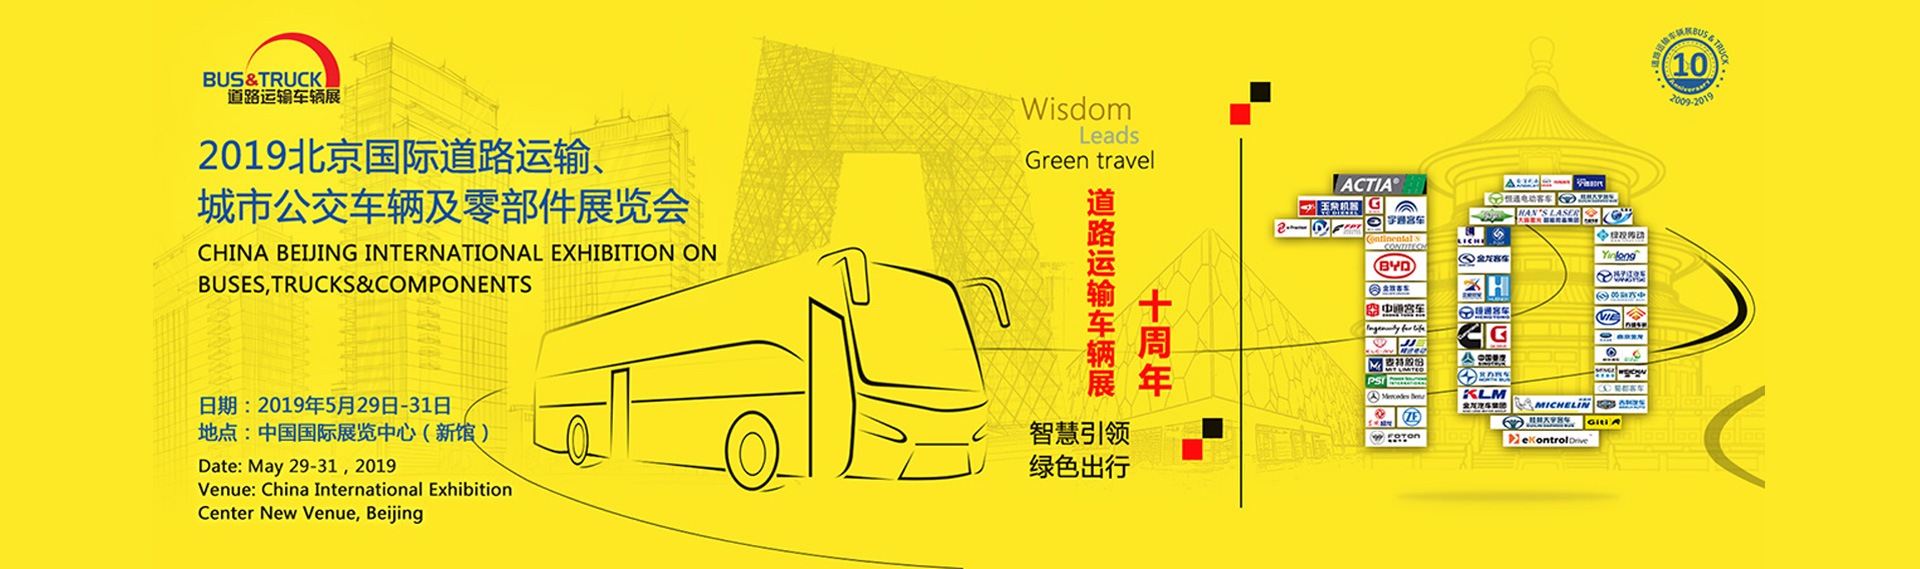 上汽菲亚特红岩展台 2019北京国际道路运输、城市公交车辆及零配件展览会